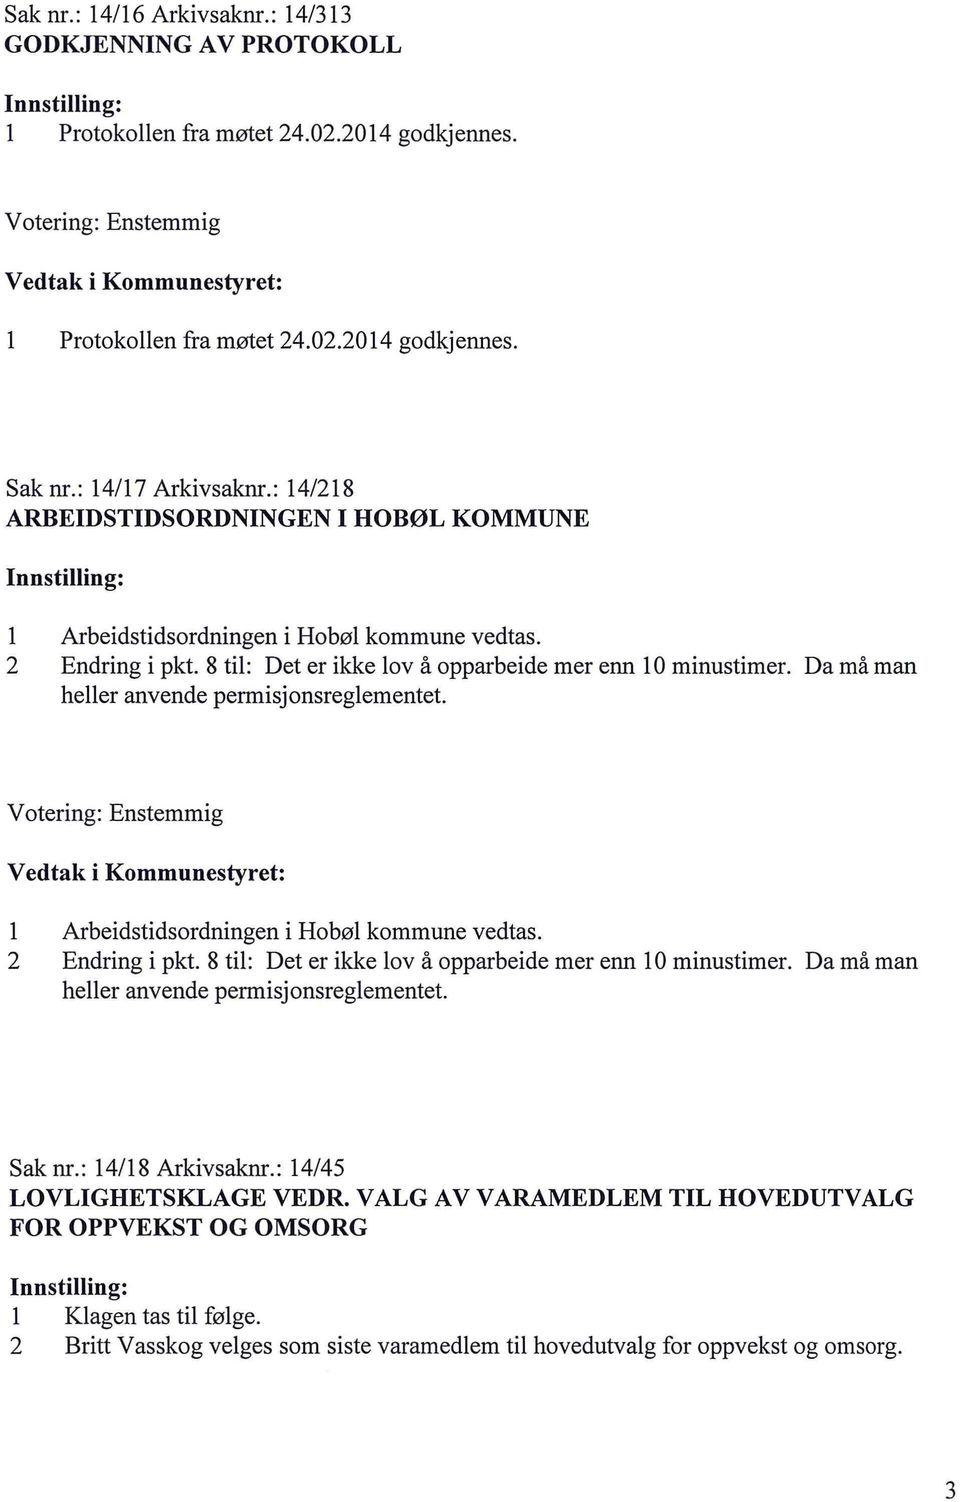 Da må man heer anvende permisjonsregementet. Arbeidstidsordningen i Hobø kommune vedtas. 2 Endring i pkt. 8 ti: Det er ikke ov å opparbeide mer enn O minustimer.